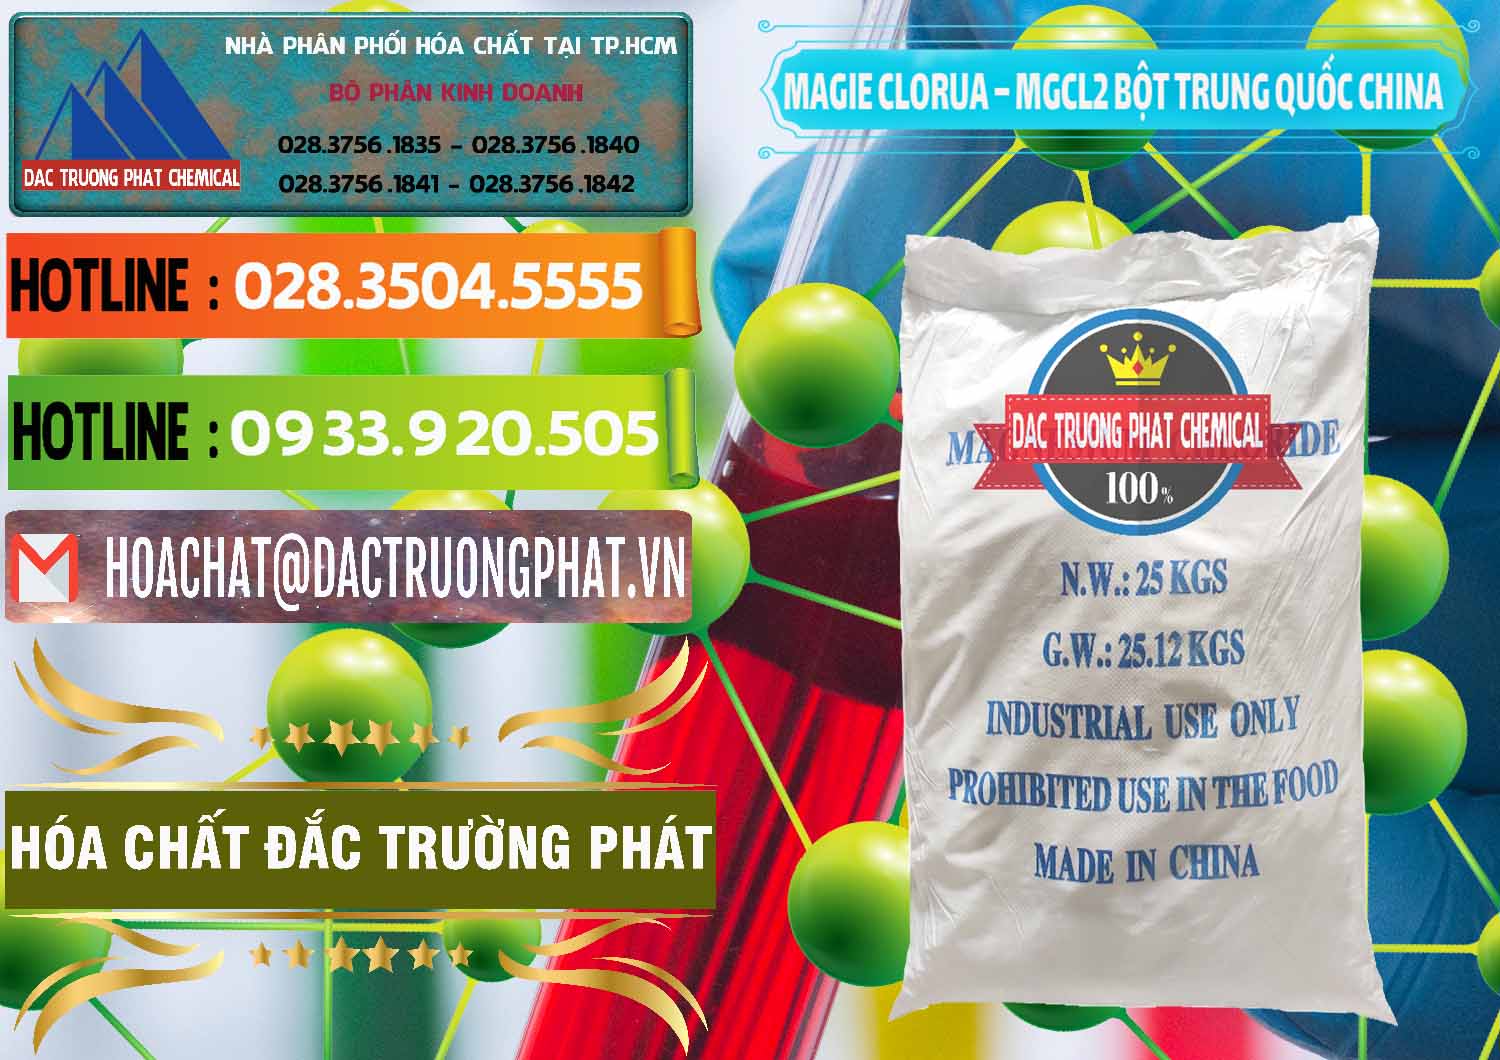 Đơn vị bán _ phân phối Magie Clorua – MGCL2 96% Dạng Bột Bao Chữ Xanh Trung Quốc China - 0207 - Nơi phân phối - nhập khẩu hóa chất tại TP.HCM - cungcaphoachat.com.vn